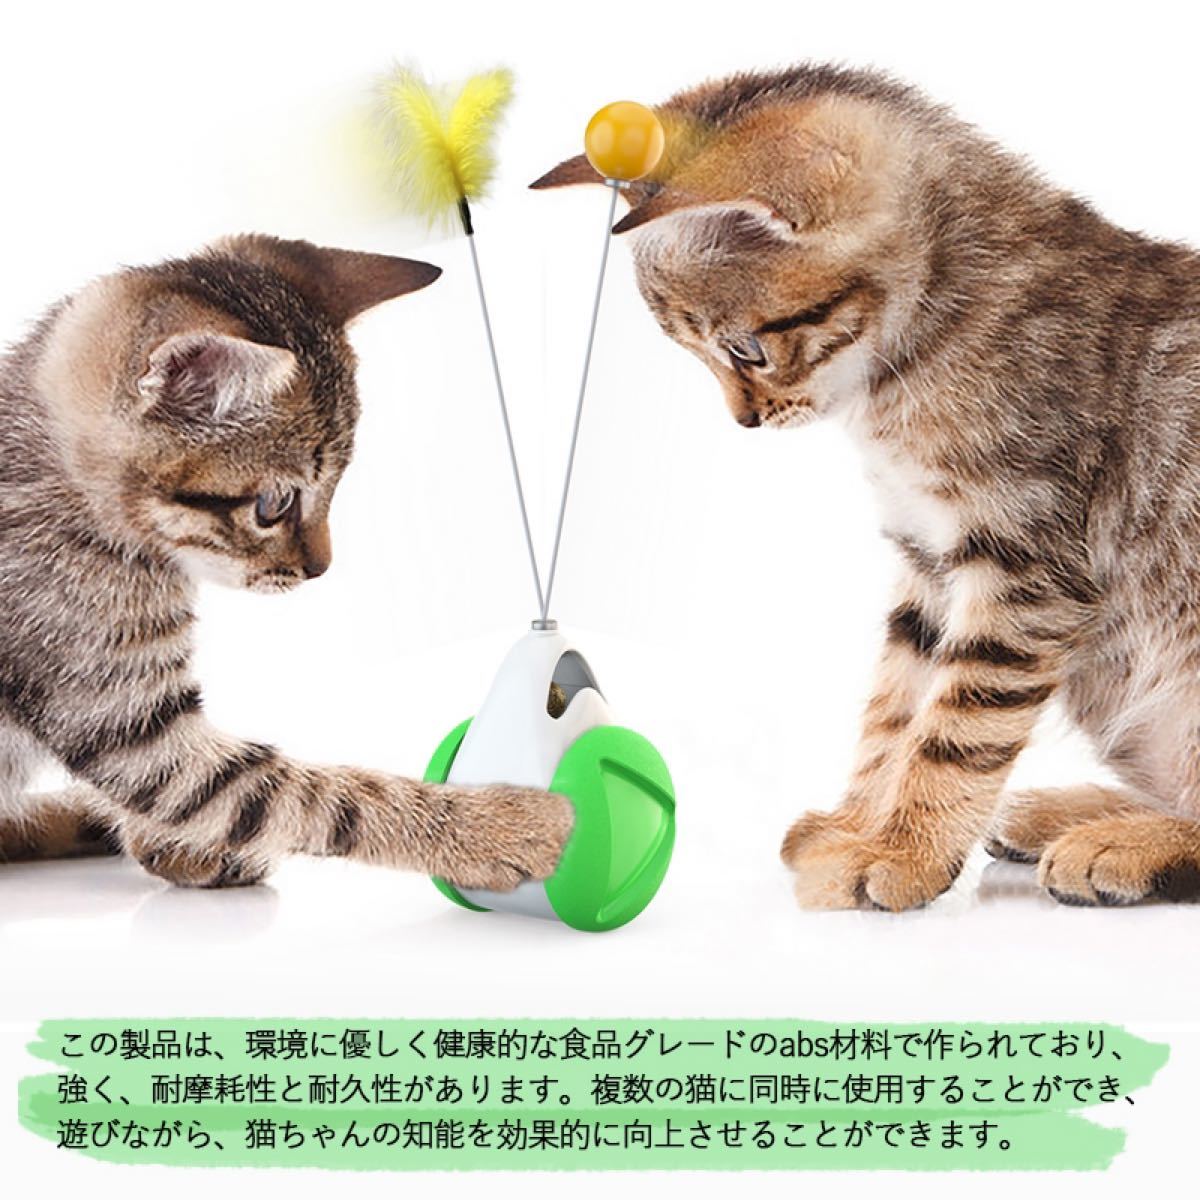 猫おもちゃ キャット用 ネコのおもちゃ バランススイング車 グリーン+ホワイト